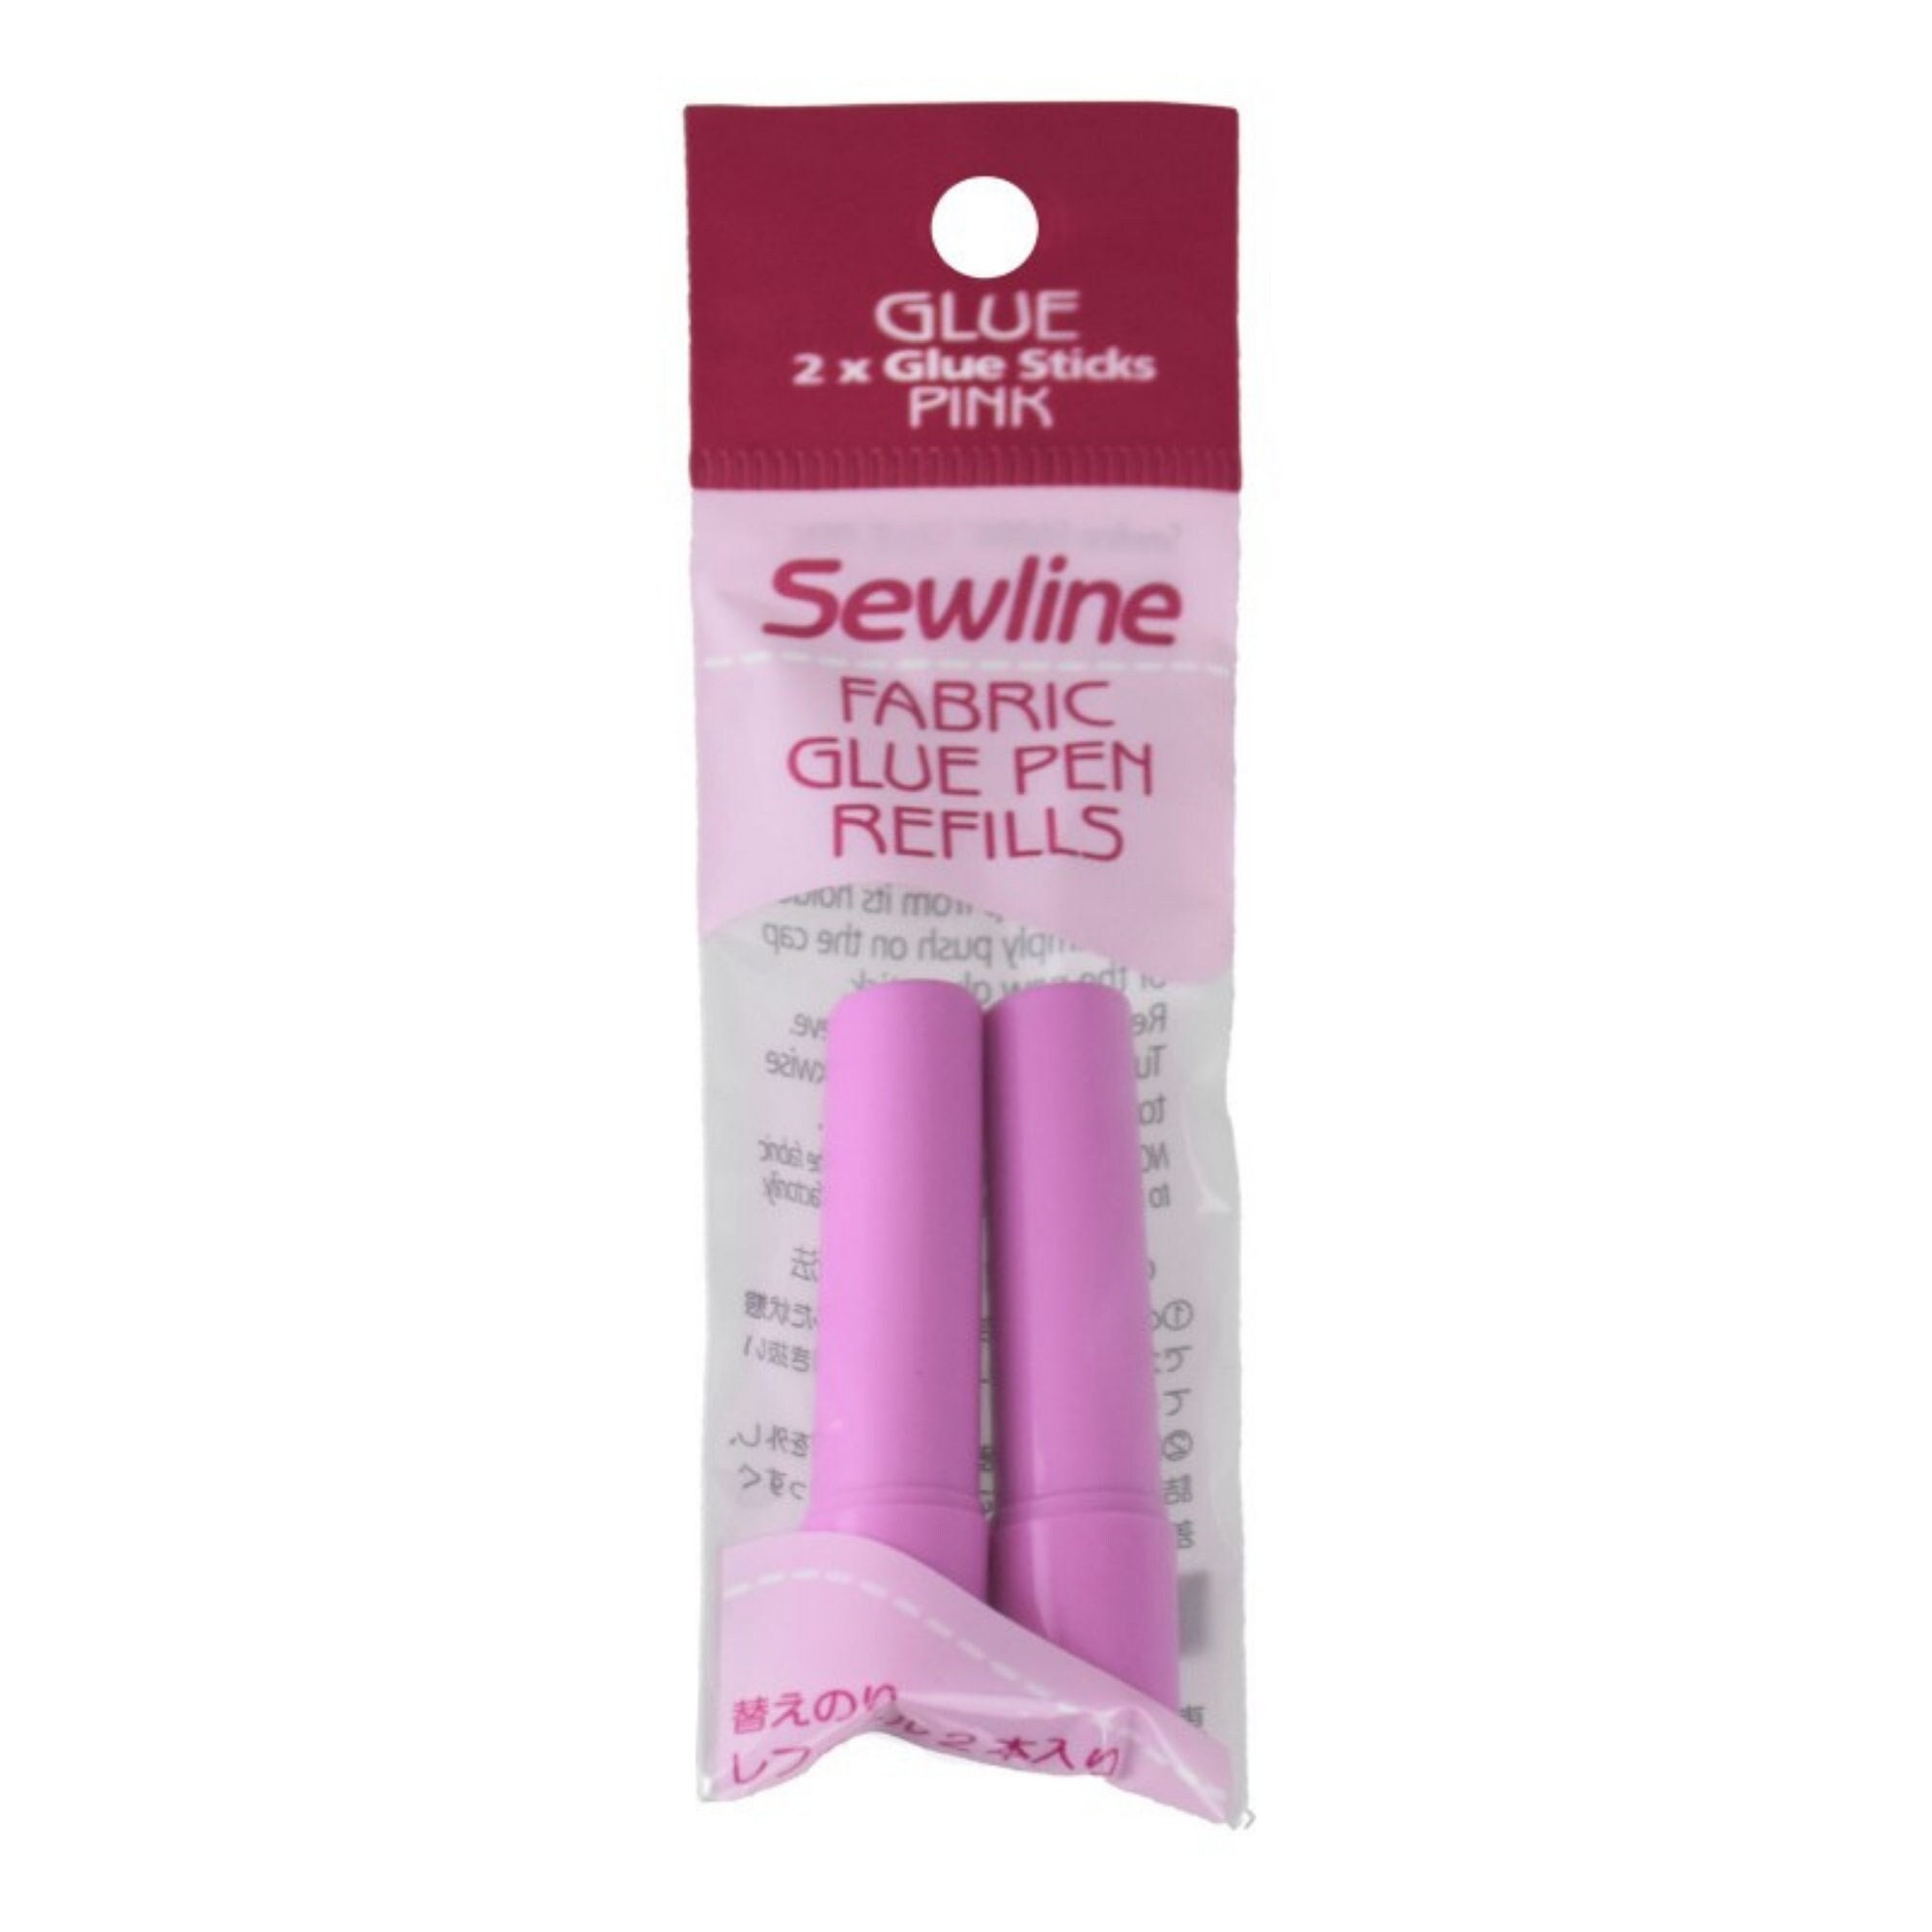 Sue Daley Designs Sewline Fabric Glue Pen Refills N093-GPR 2